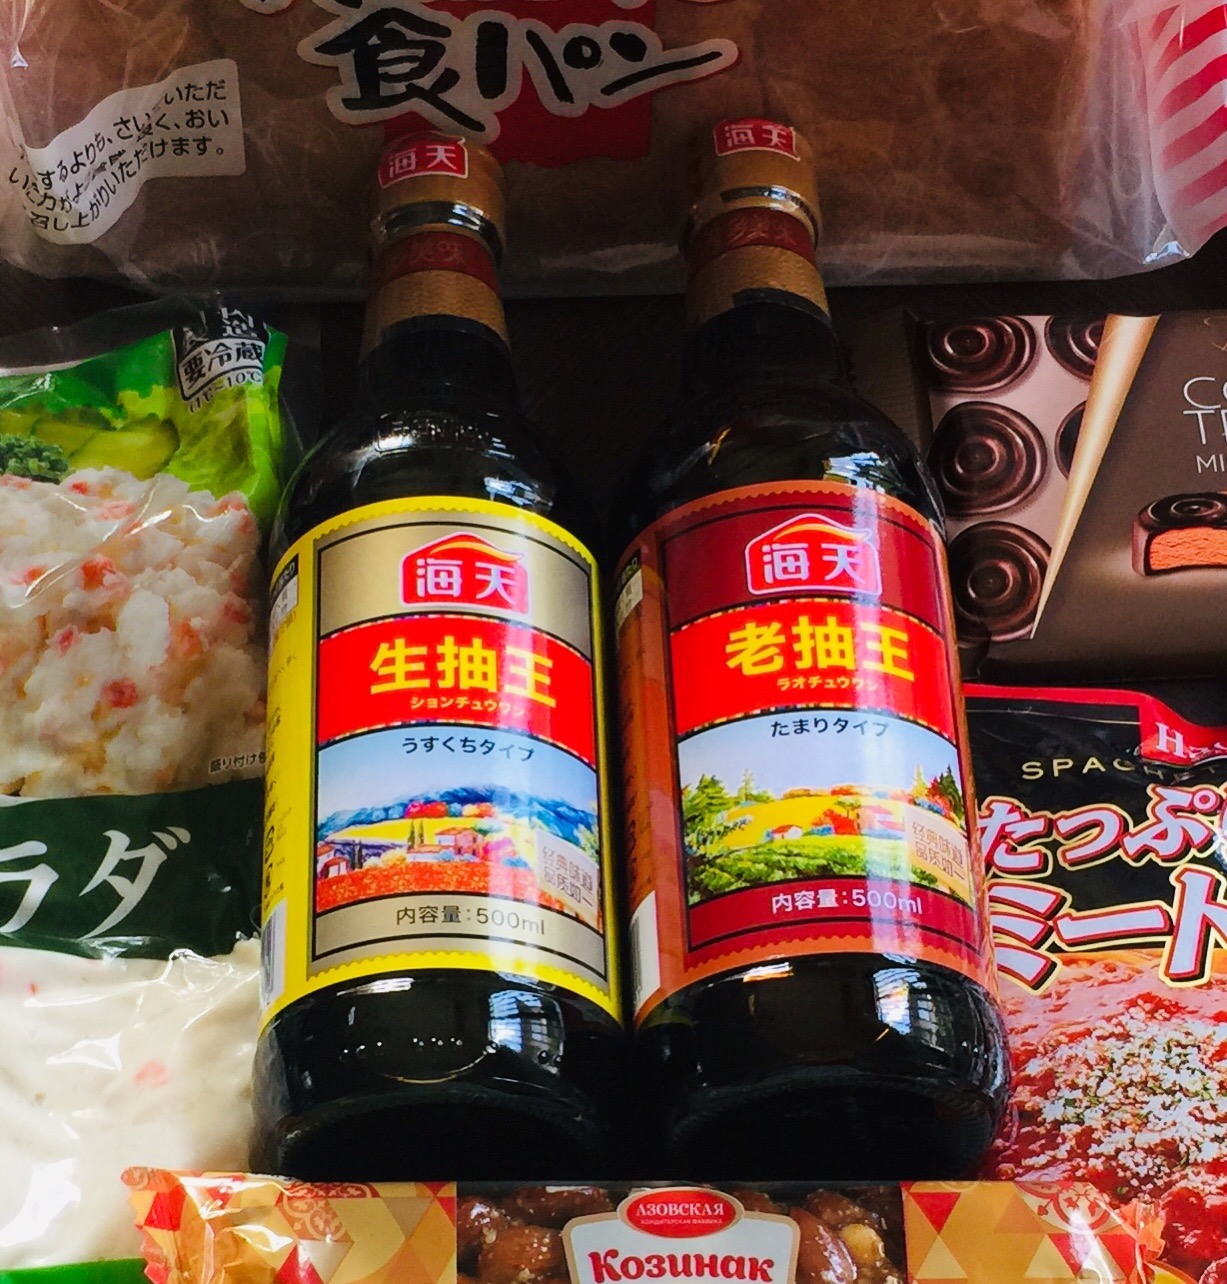 業務スーパー 中国醤油 老抽 生抽 業務スーパーの商品をレポートするブログ